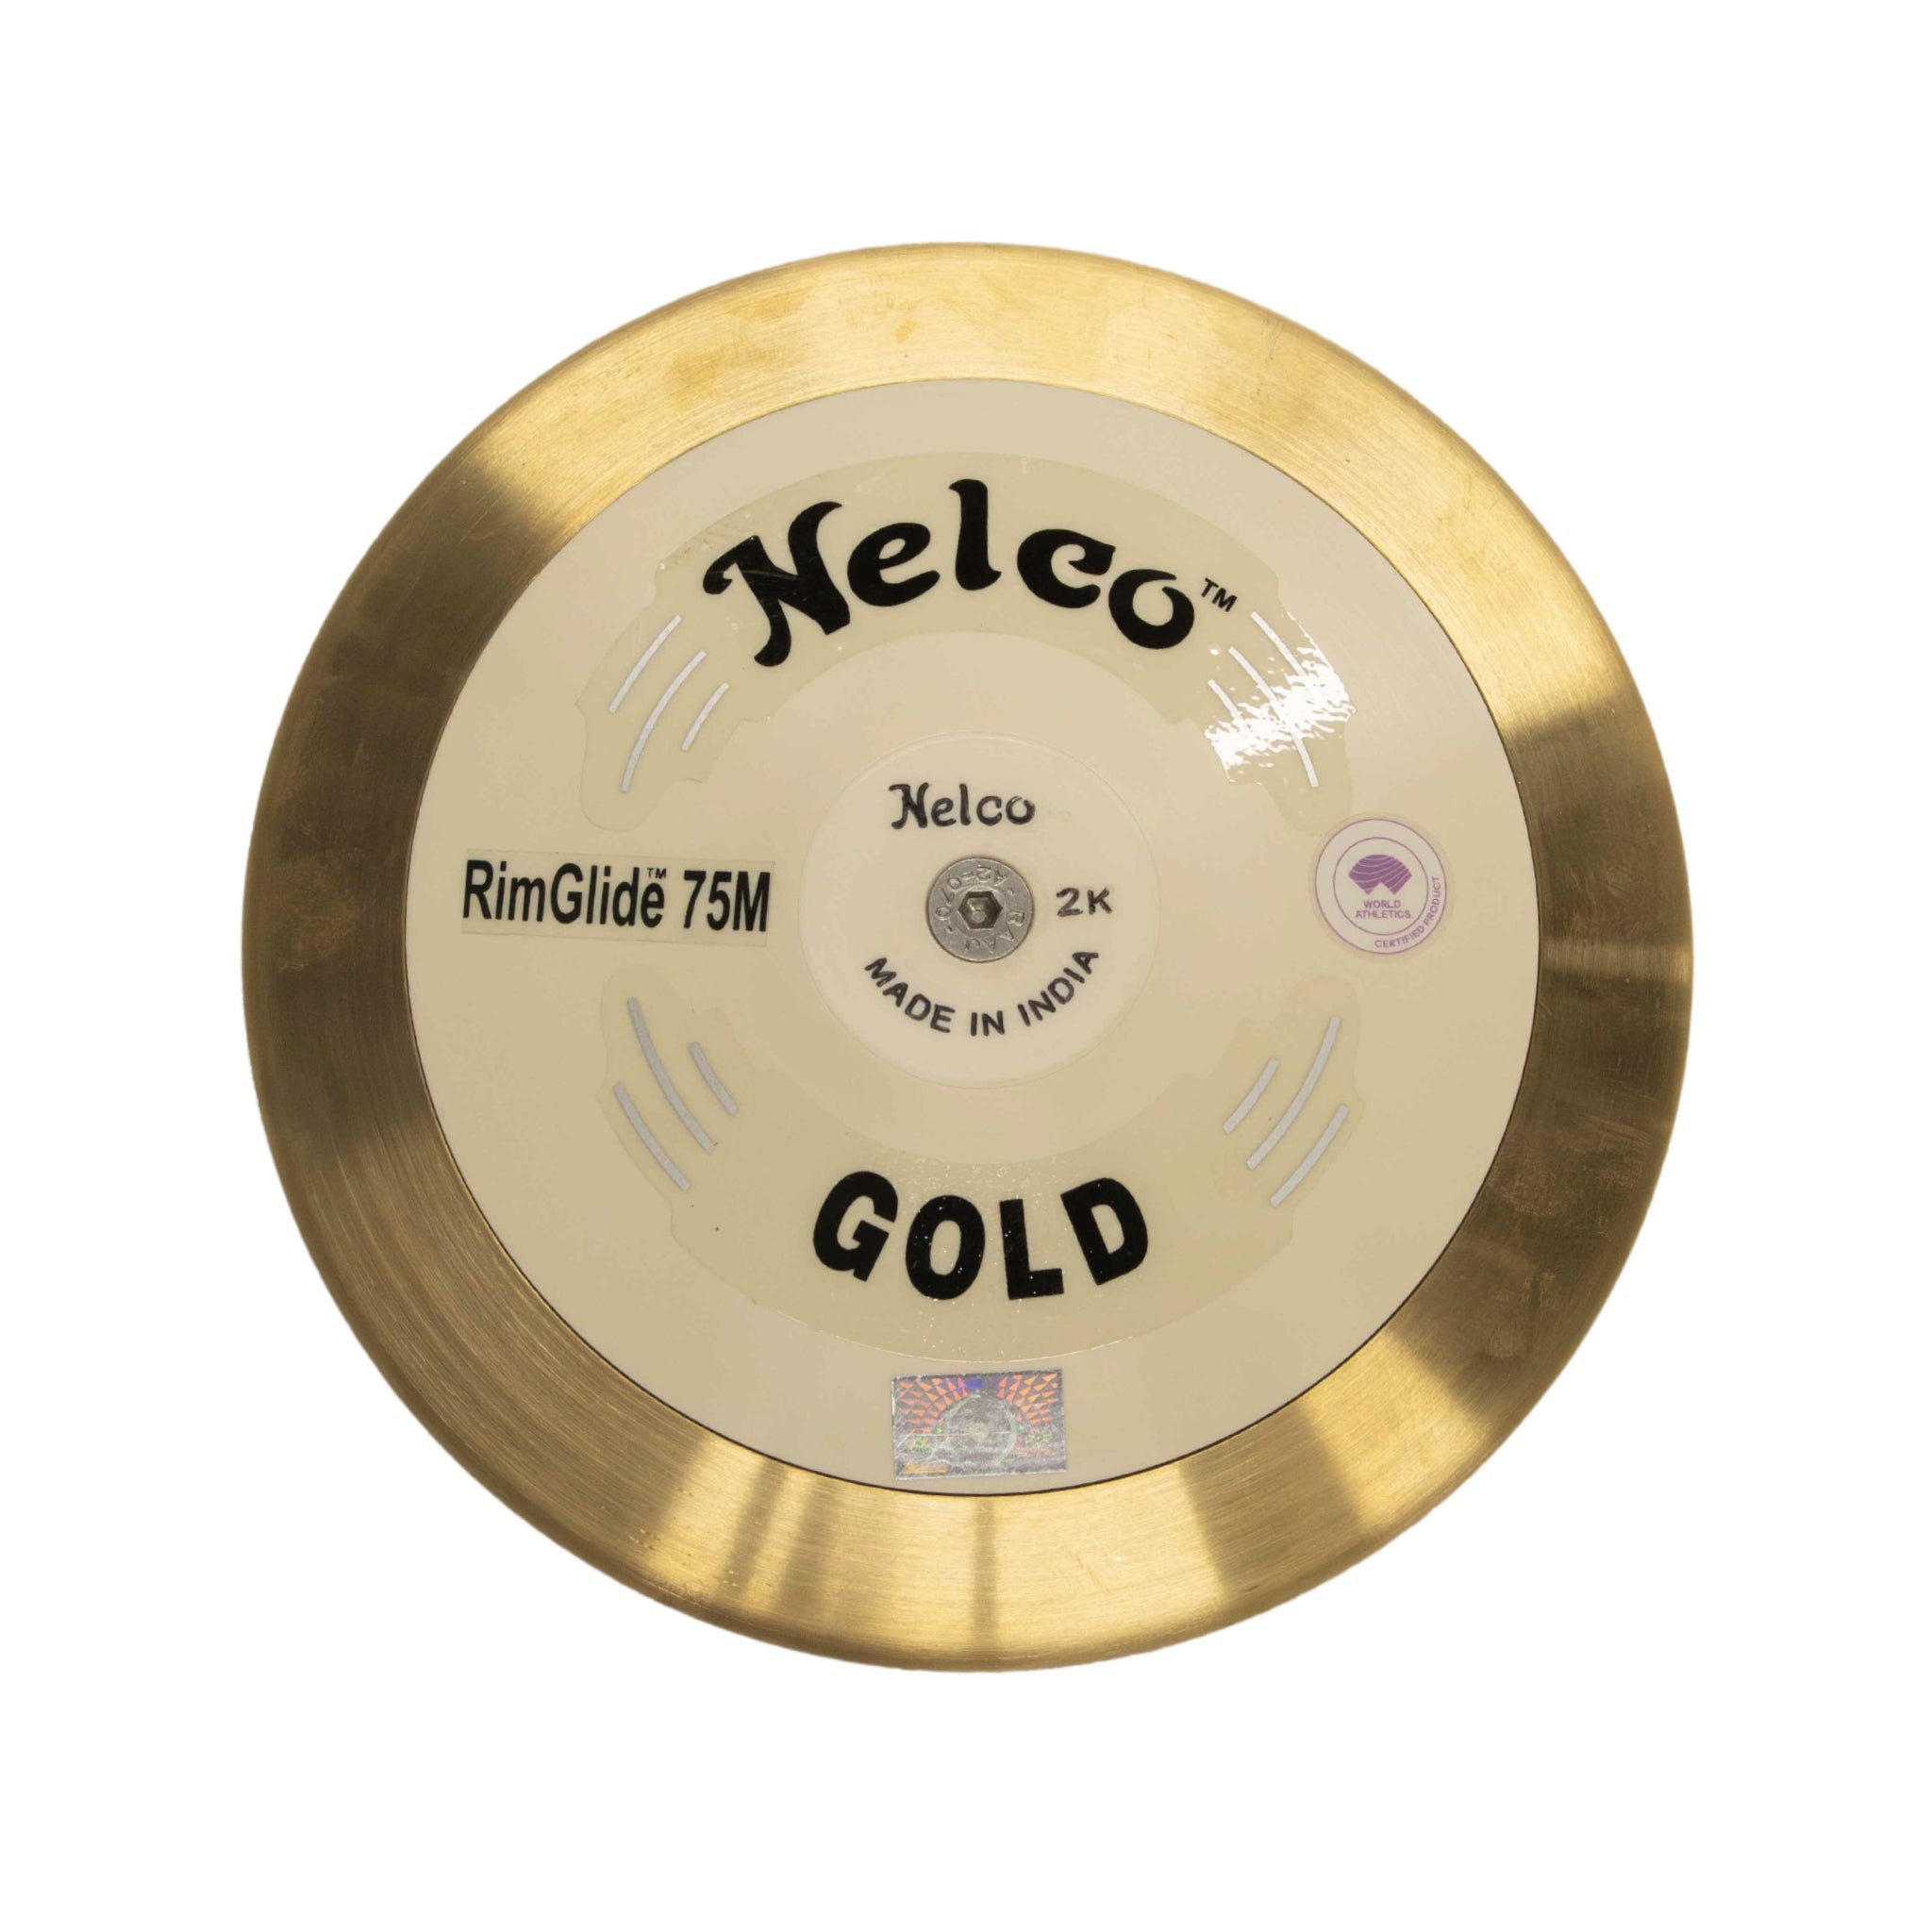 Gold Discus Rim Glide 75m